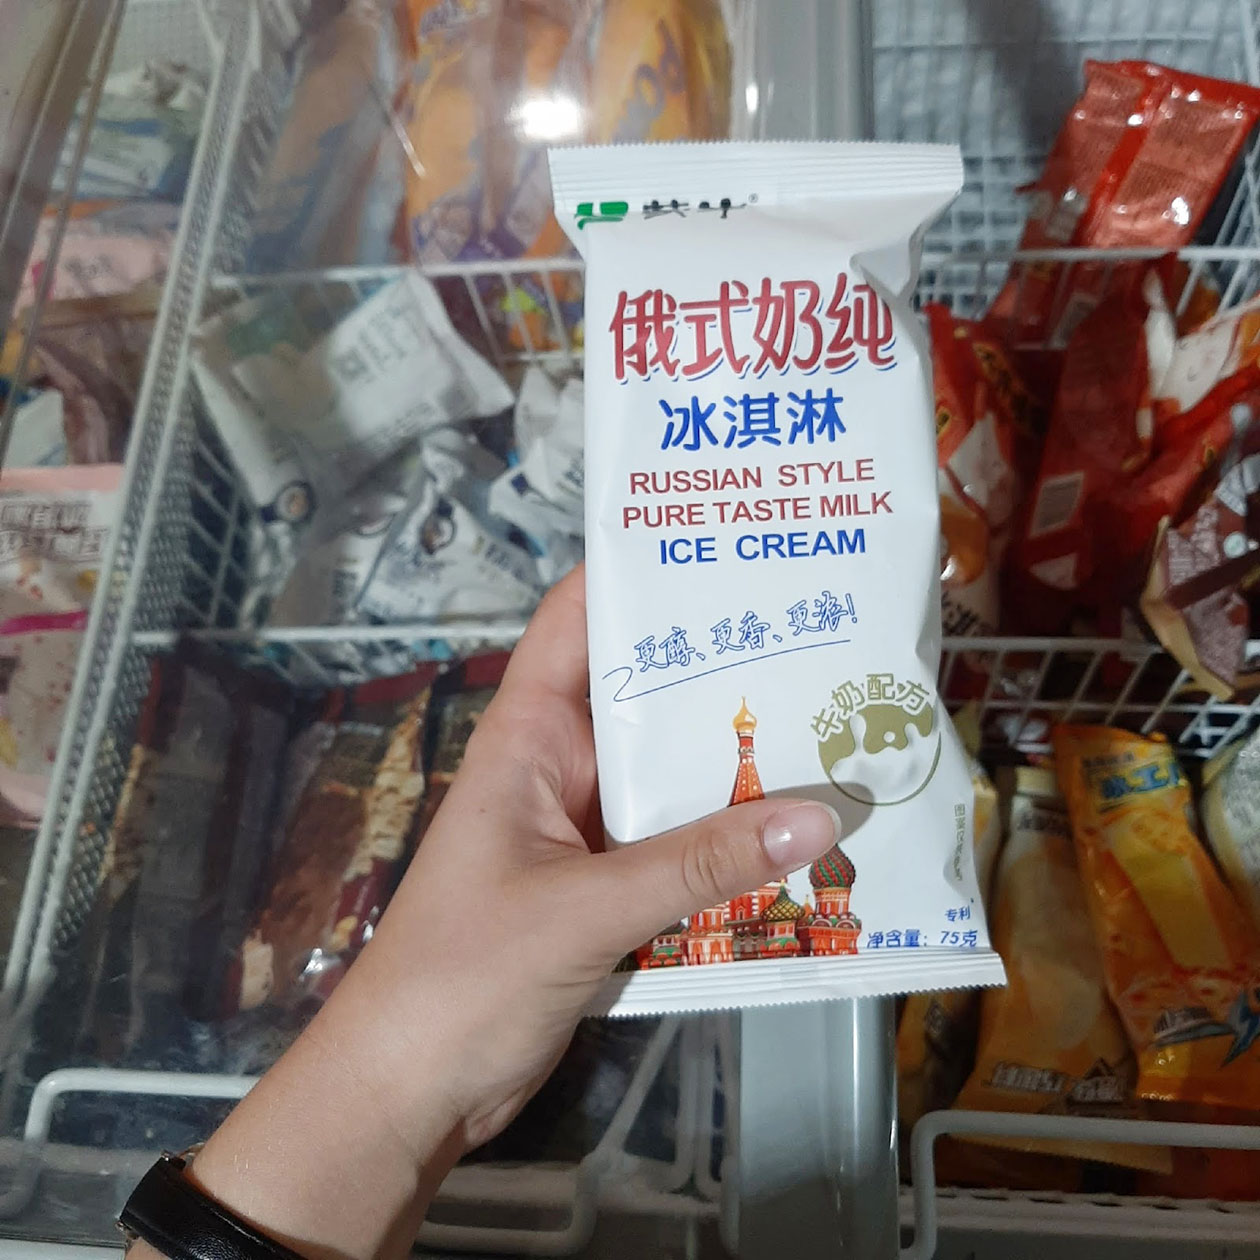 Молочных продуктов в Китае мало, зато в обычных супермаркетах попадаются товары как в России. На этом фото — мороженое в русском стиле